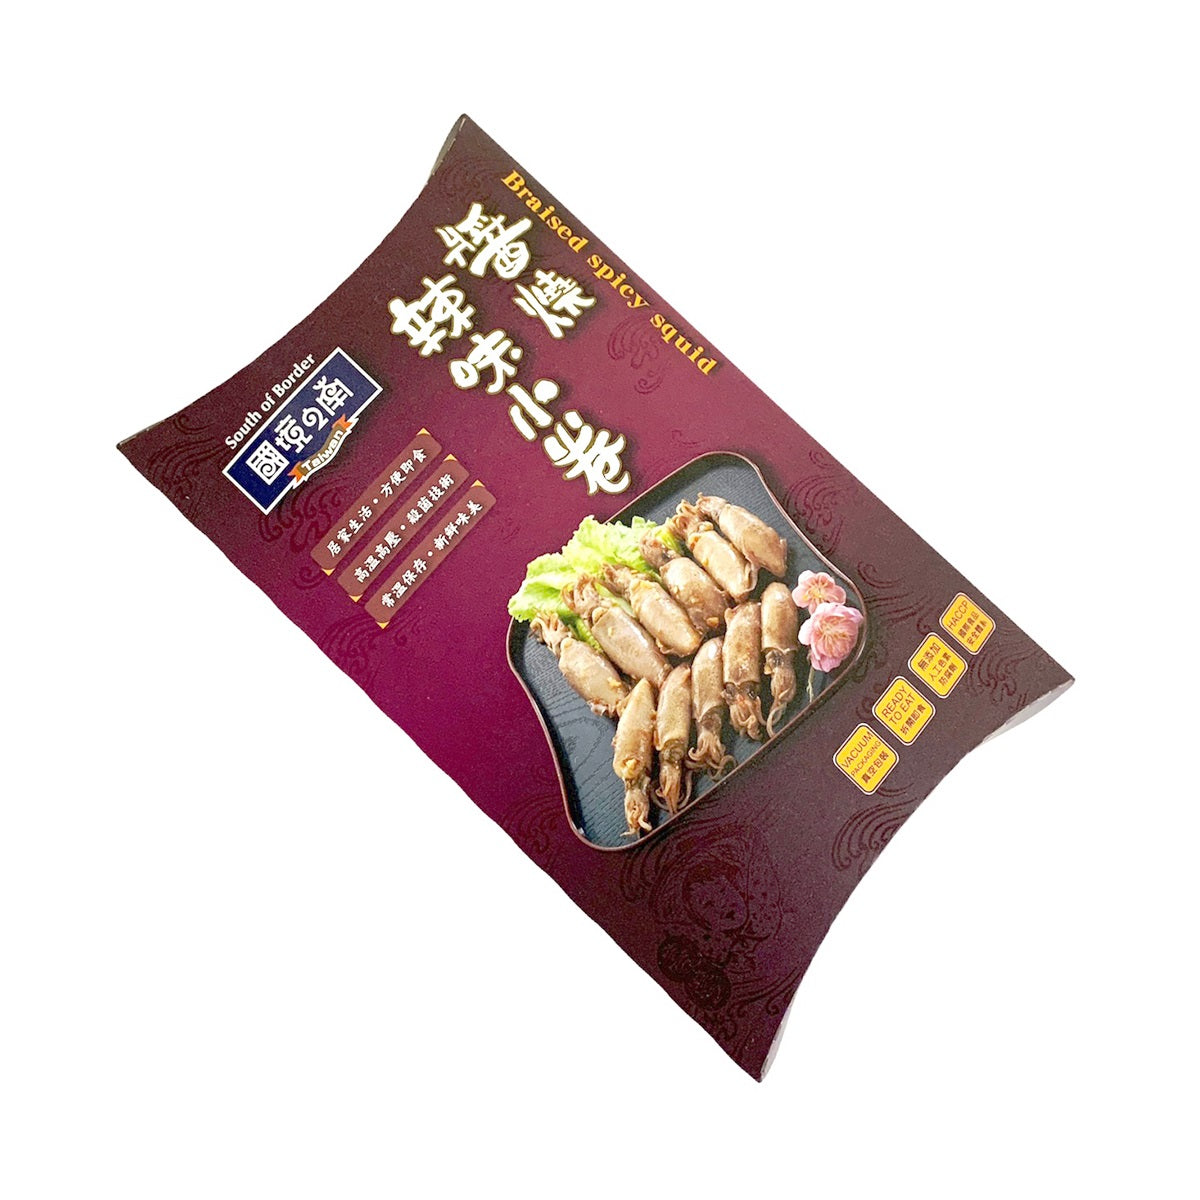 得意中華 國境之南 D.E CHUNG HUA 醬燒辣味小卷 90g